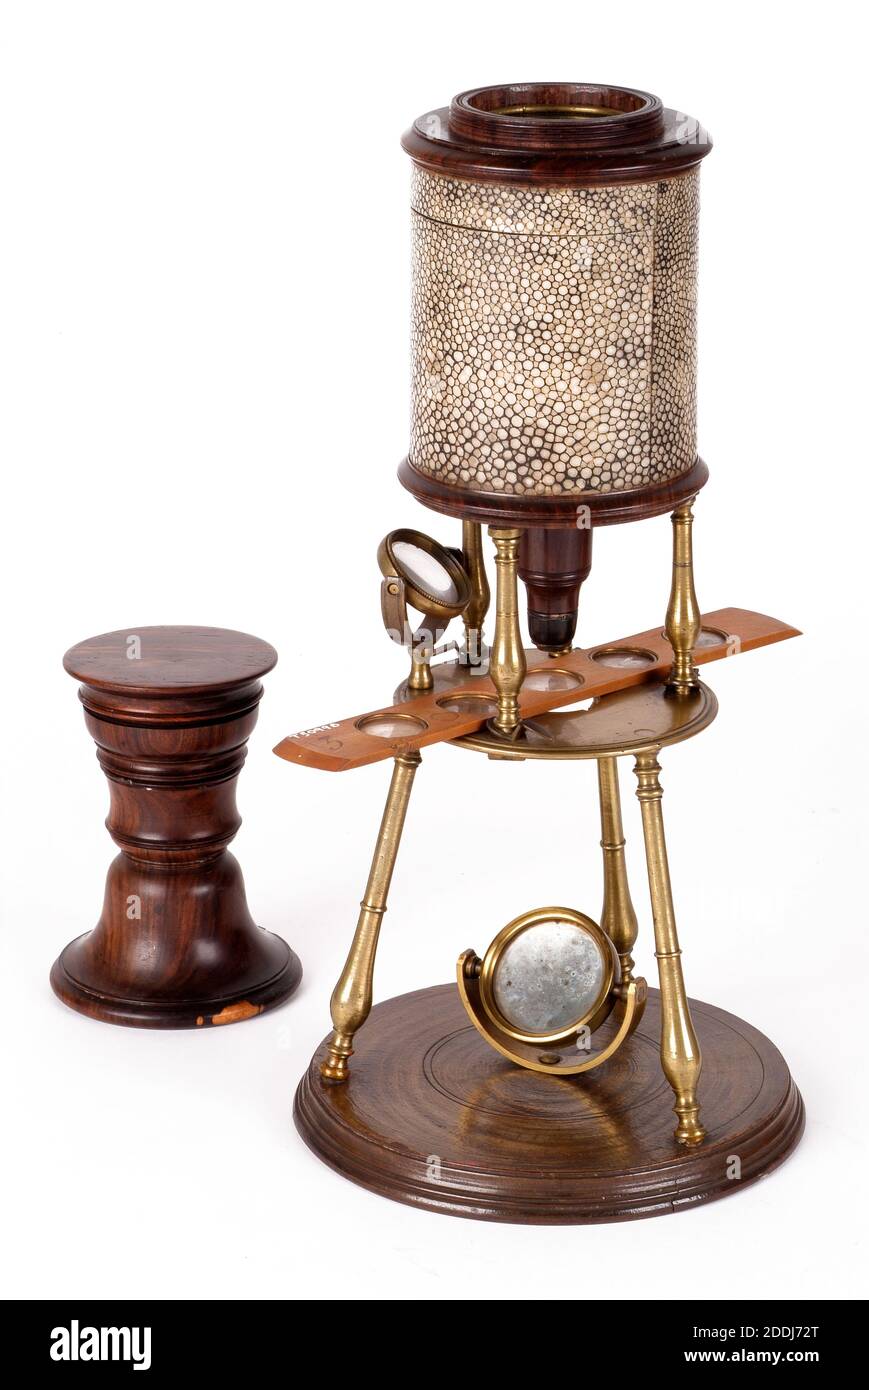 Instrument scientifique, Culpepper Compound Microscope, avec case, 1725-30 le microscope composé a été inventé au début du XVIIe siècle. Jusqu'aux environs de 1740, tous les microscopes étaient constitués d'un cylindre en bois ou en carton, généralement recouvert d'un rabole (peau de requin) ou de cuir. Culpepper est l'un des grands noms associés aux premiers microscopes. Celui-ci a son propre boîtier en chêne avec un tiroir au fond. Il y a également plusieurs lames de spécimen de buis. Bois, Sciences et Industrie, Histoire sociale, Santé et médecine Banque D'Images